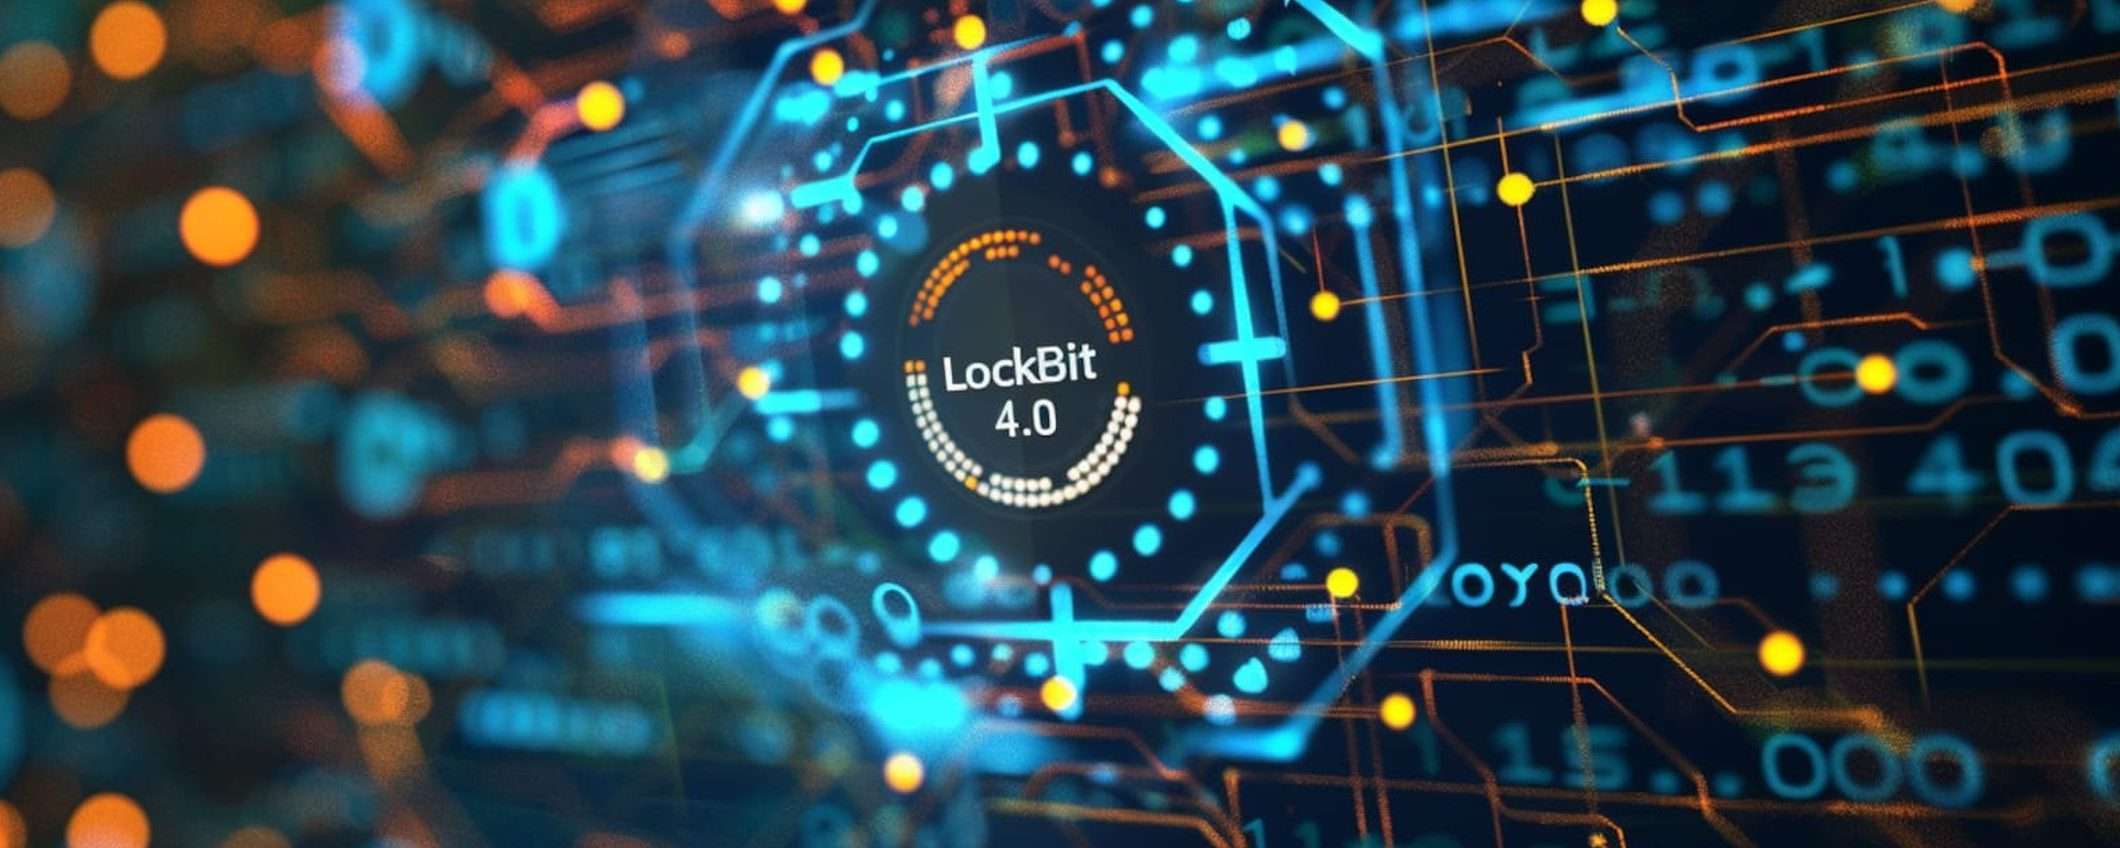 LockBit aveva sviluppato la versione 4.0 del ransomware